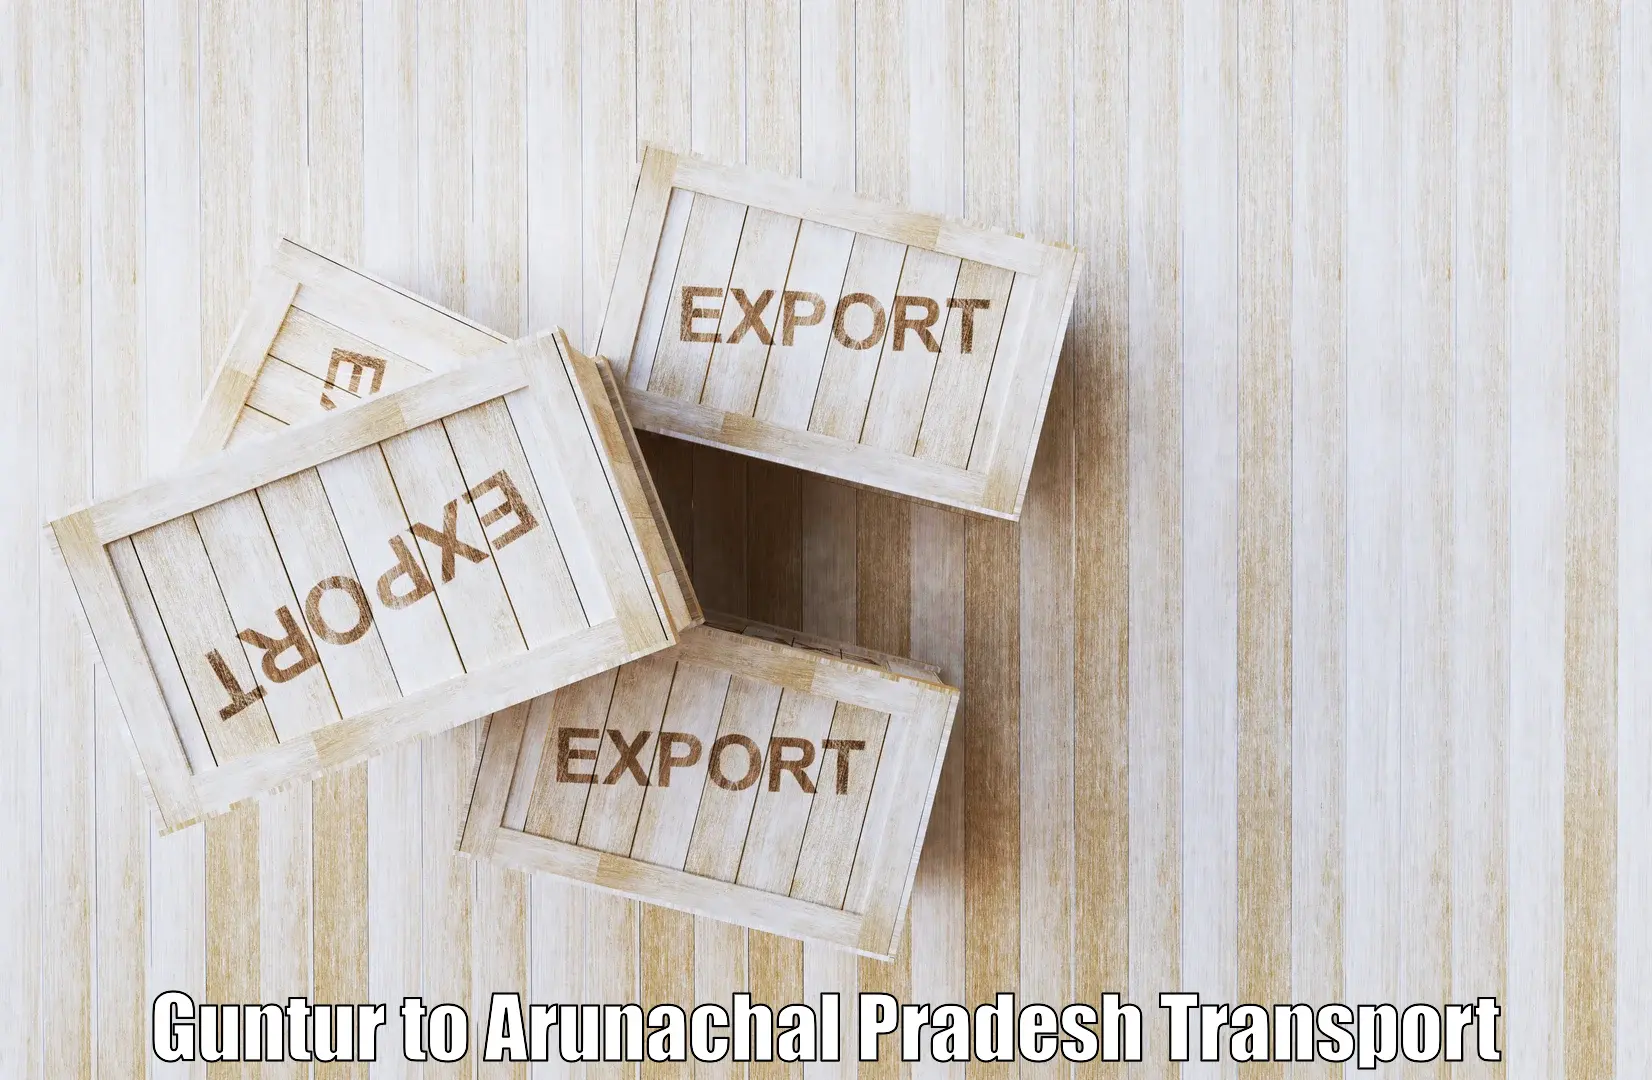 Road transport online services in Guntur to Arunachal Pradesh